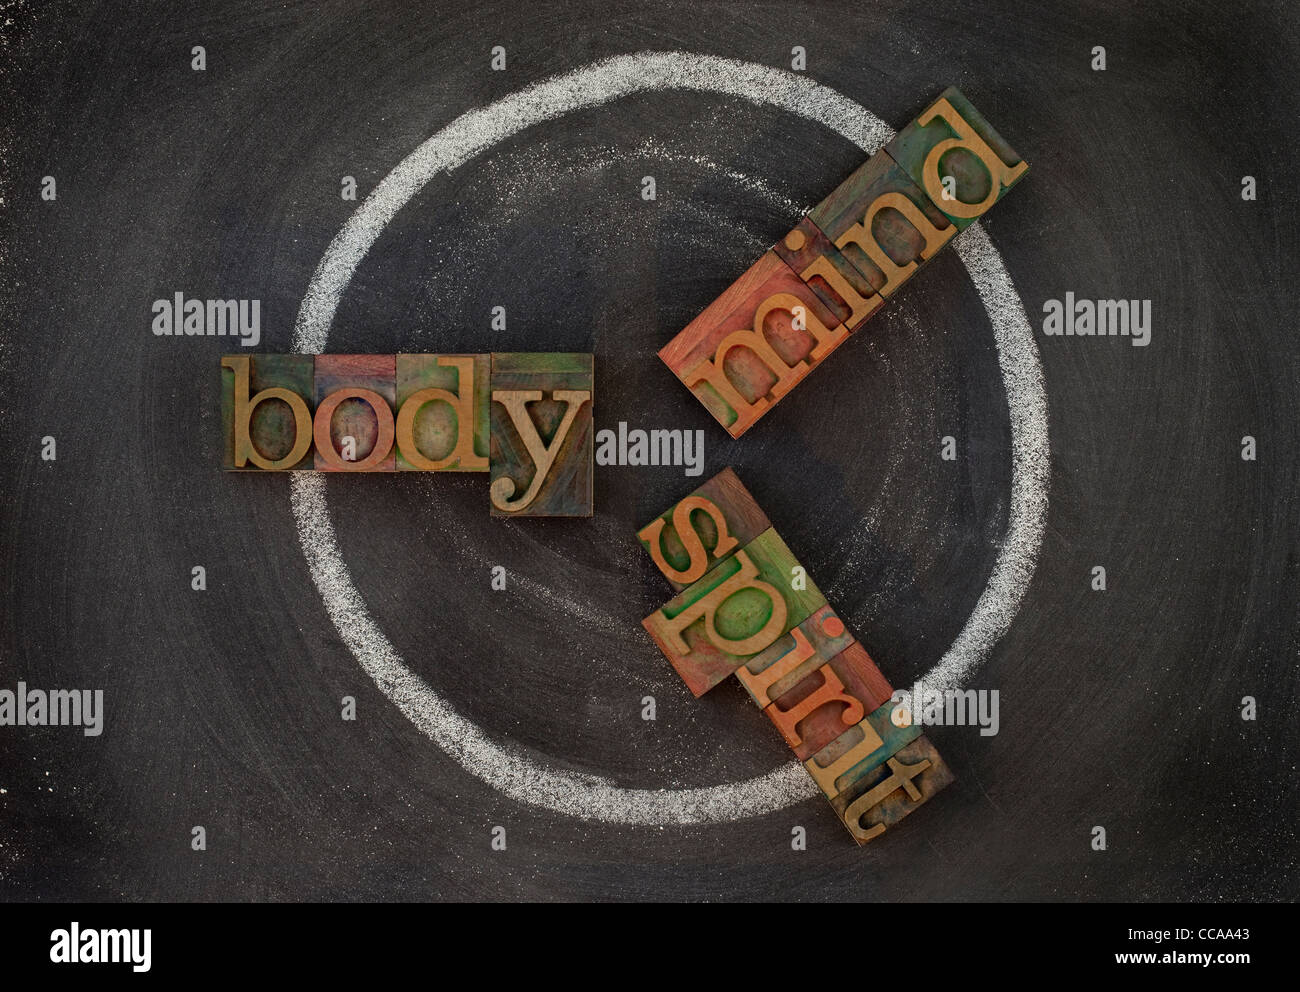 Le concept de cycle de bien-être (corps, esprit, l'esprit) - blocs en bois vintage type typogravure, dessin à la craie blanche sur tableau noir Banque D'Images